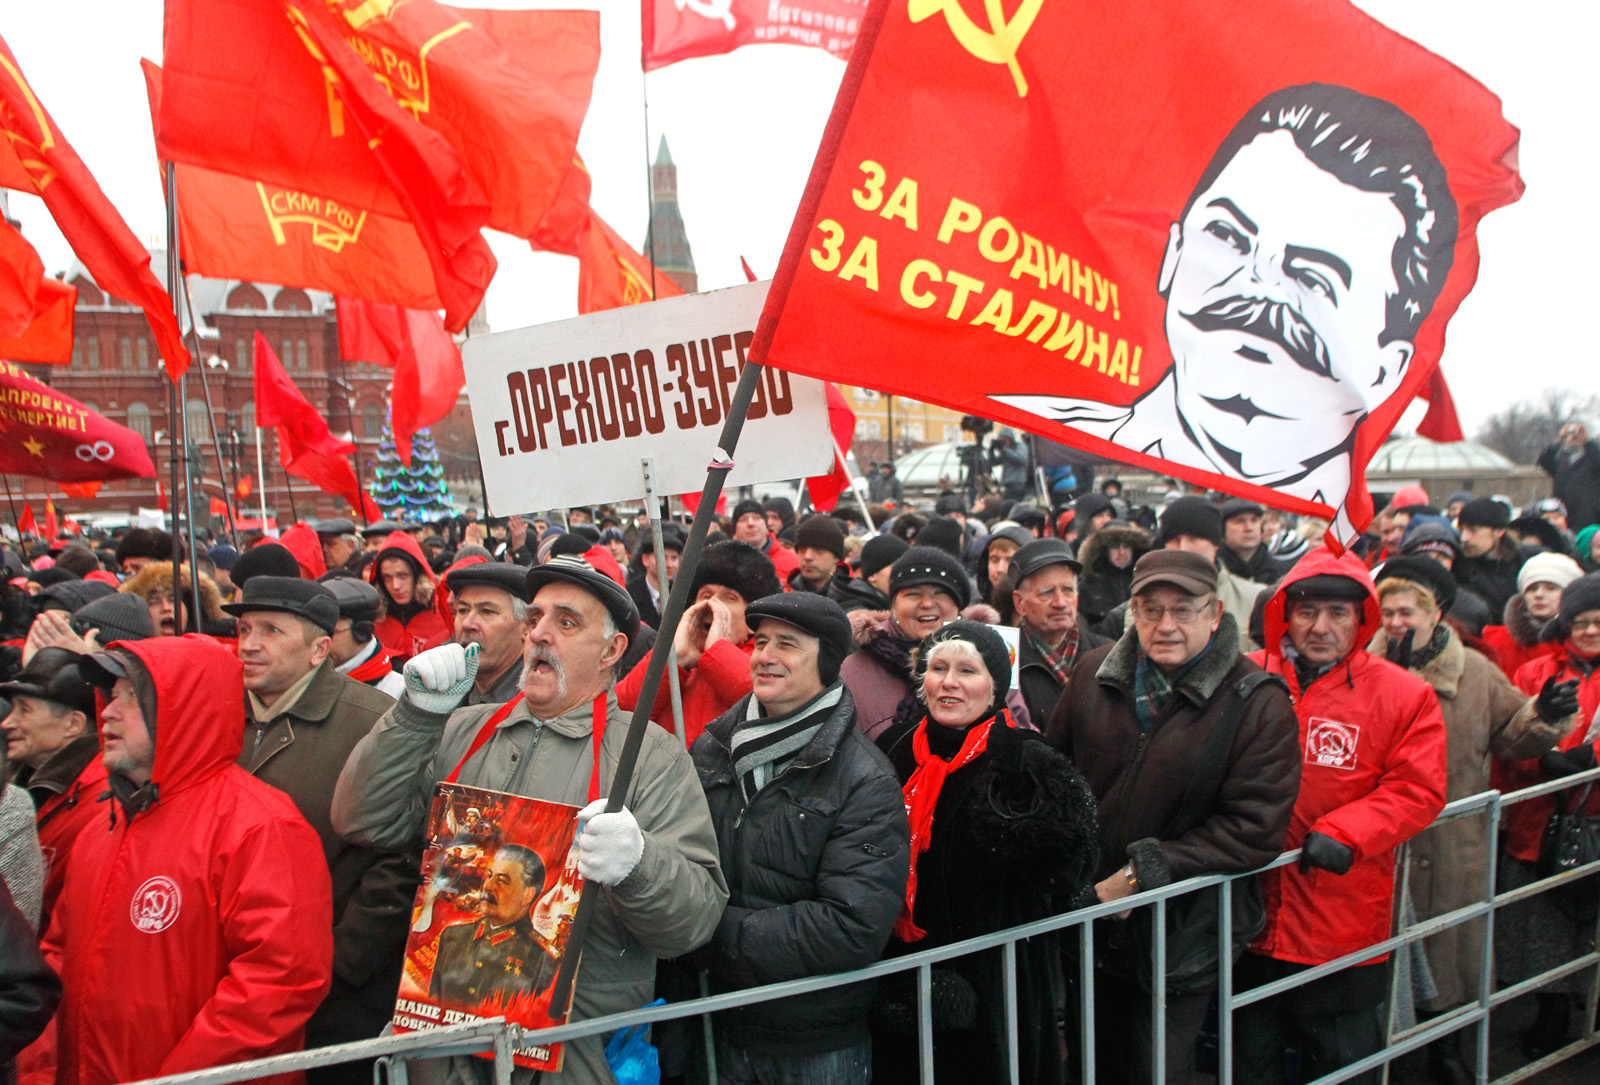 crowd-communist-stalin